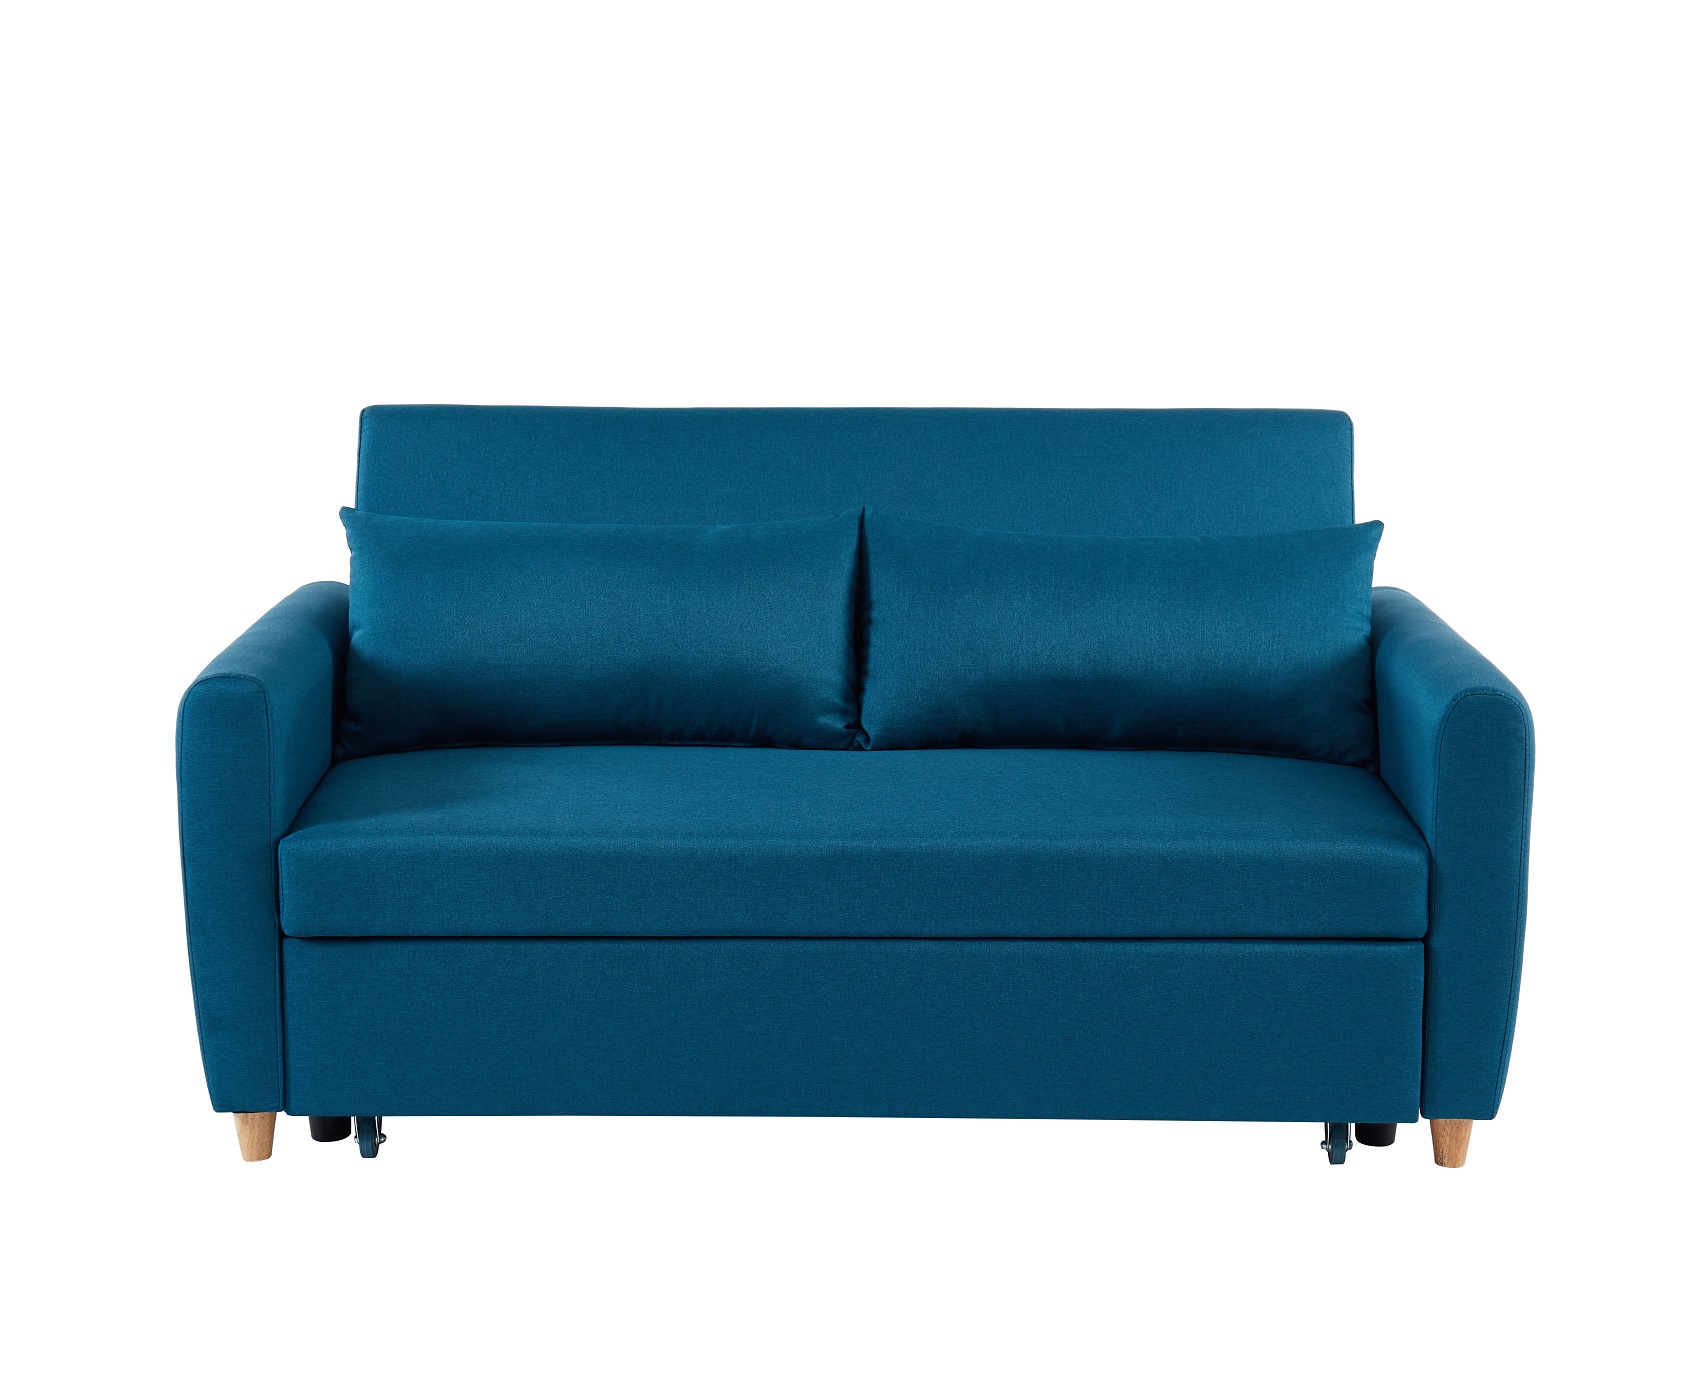 Canapé droit convertible en tissu 3 places bleu